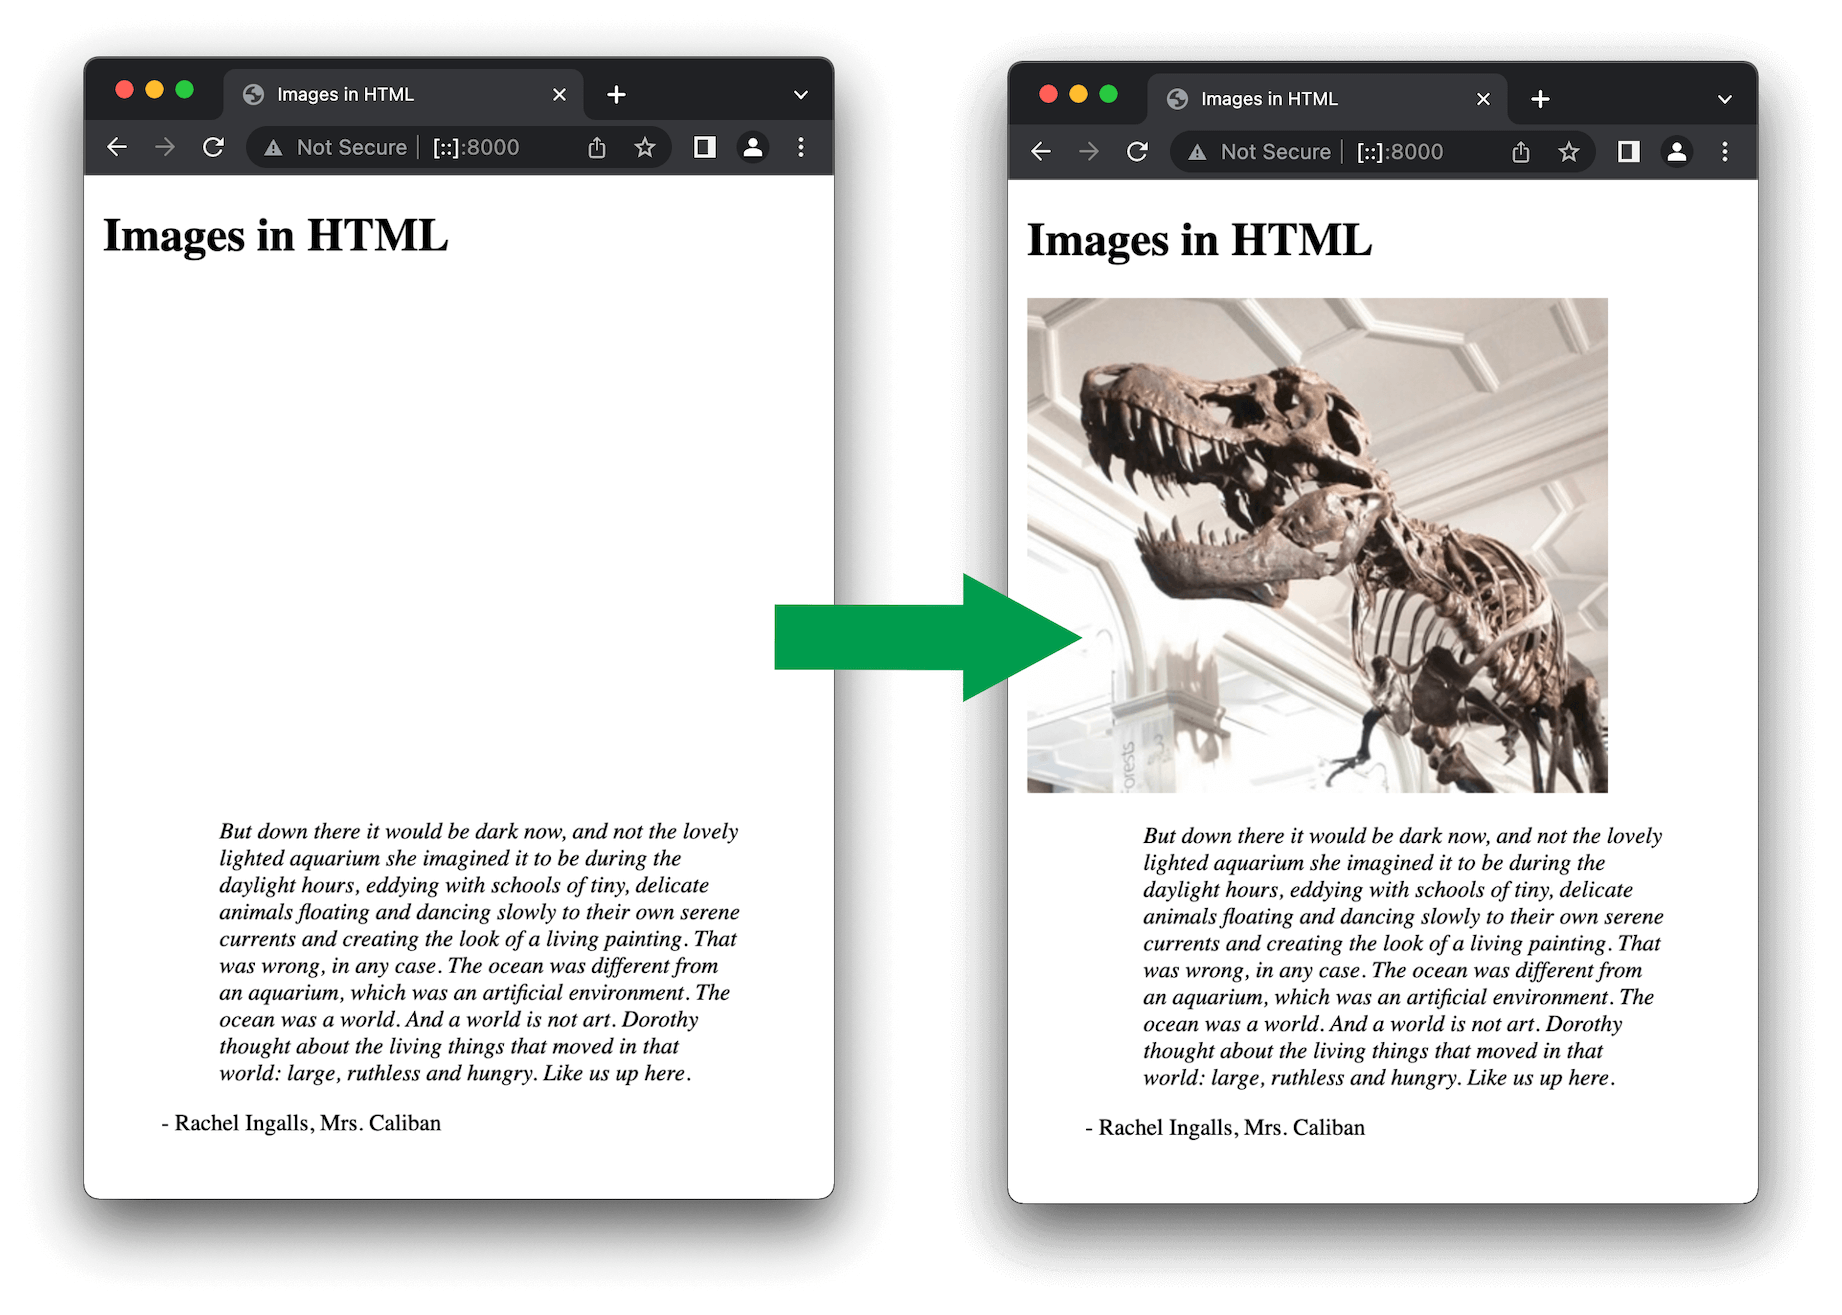 브라우저가 페이지를 로드하는 동안과 페이지가 완료된 후 이미지 크기를 지정했을 때의 페이지 레이아웃을 비교합니다.